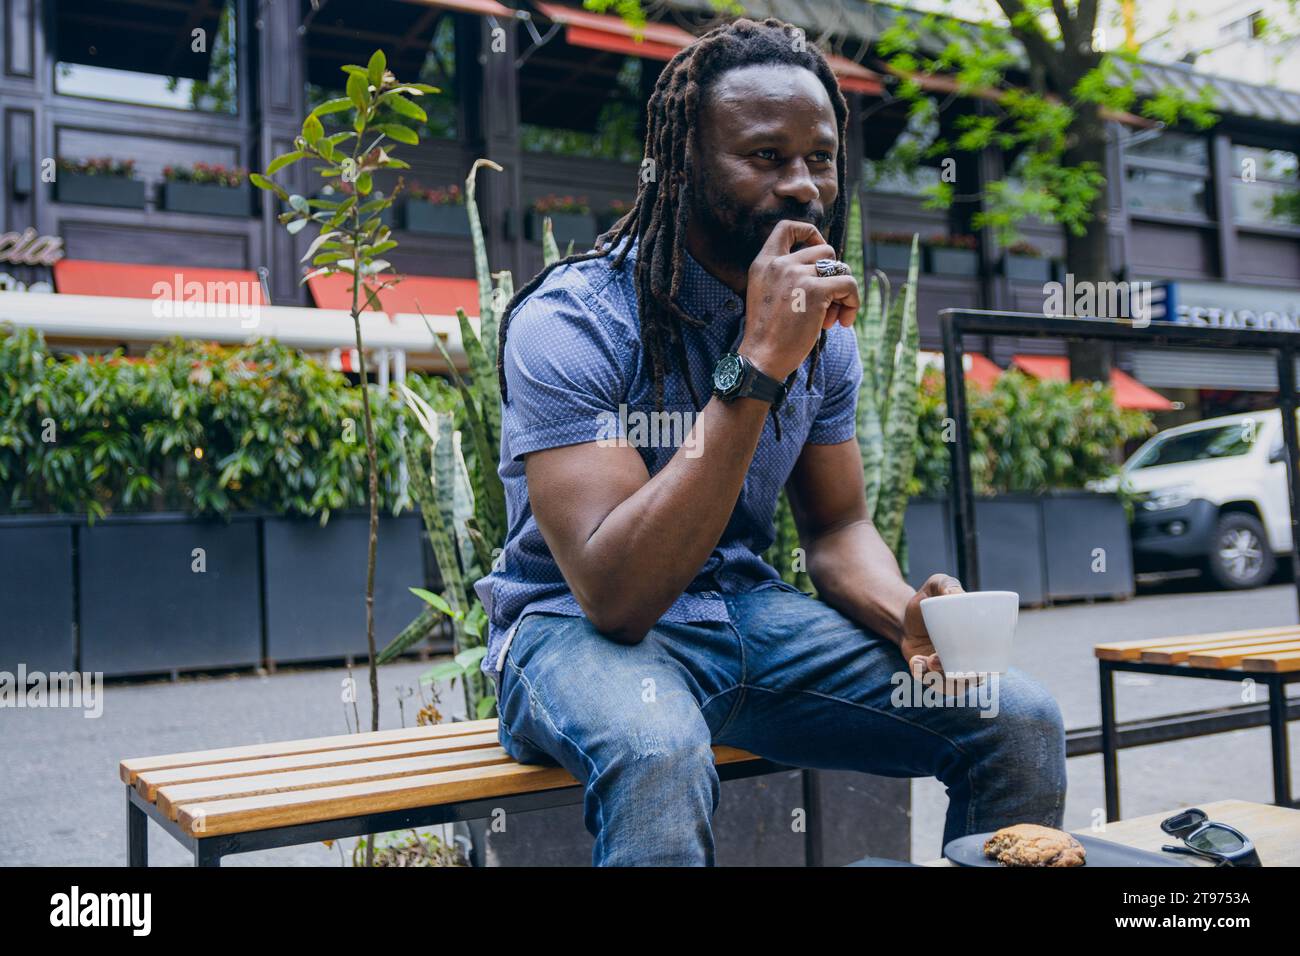 giovane africano con dreadlock seduti all'aperto a bere caffè e a pensare con la mano sulla bocca, guardando avanti meditando e godendosi il riposo Foto Stock